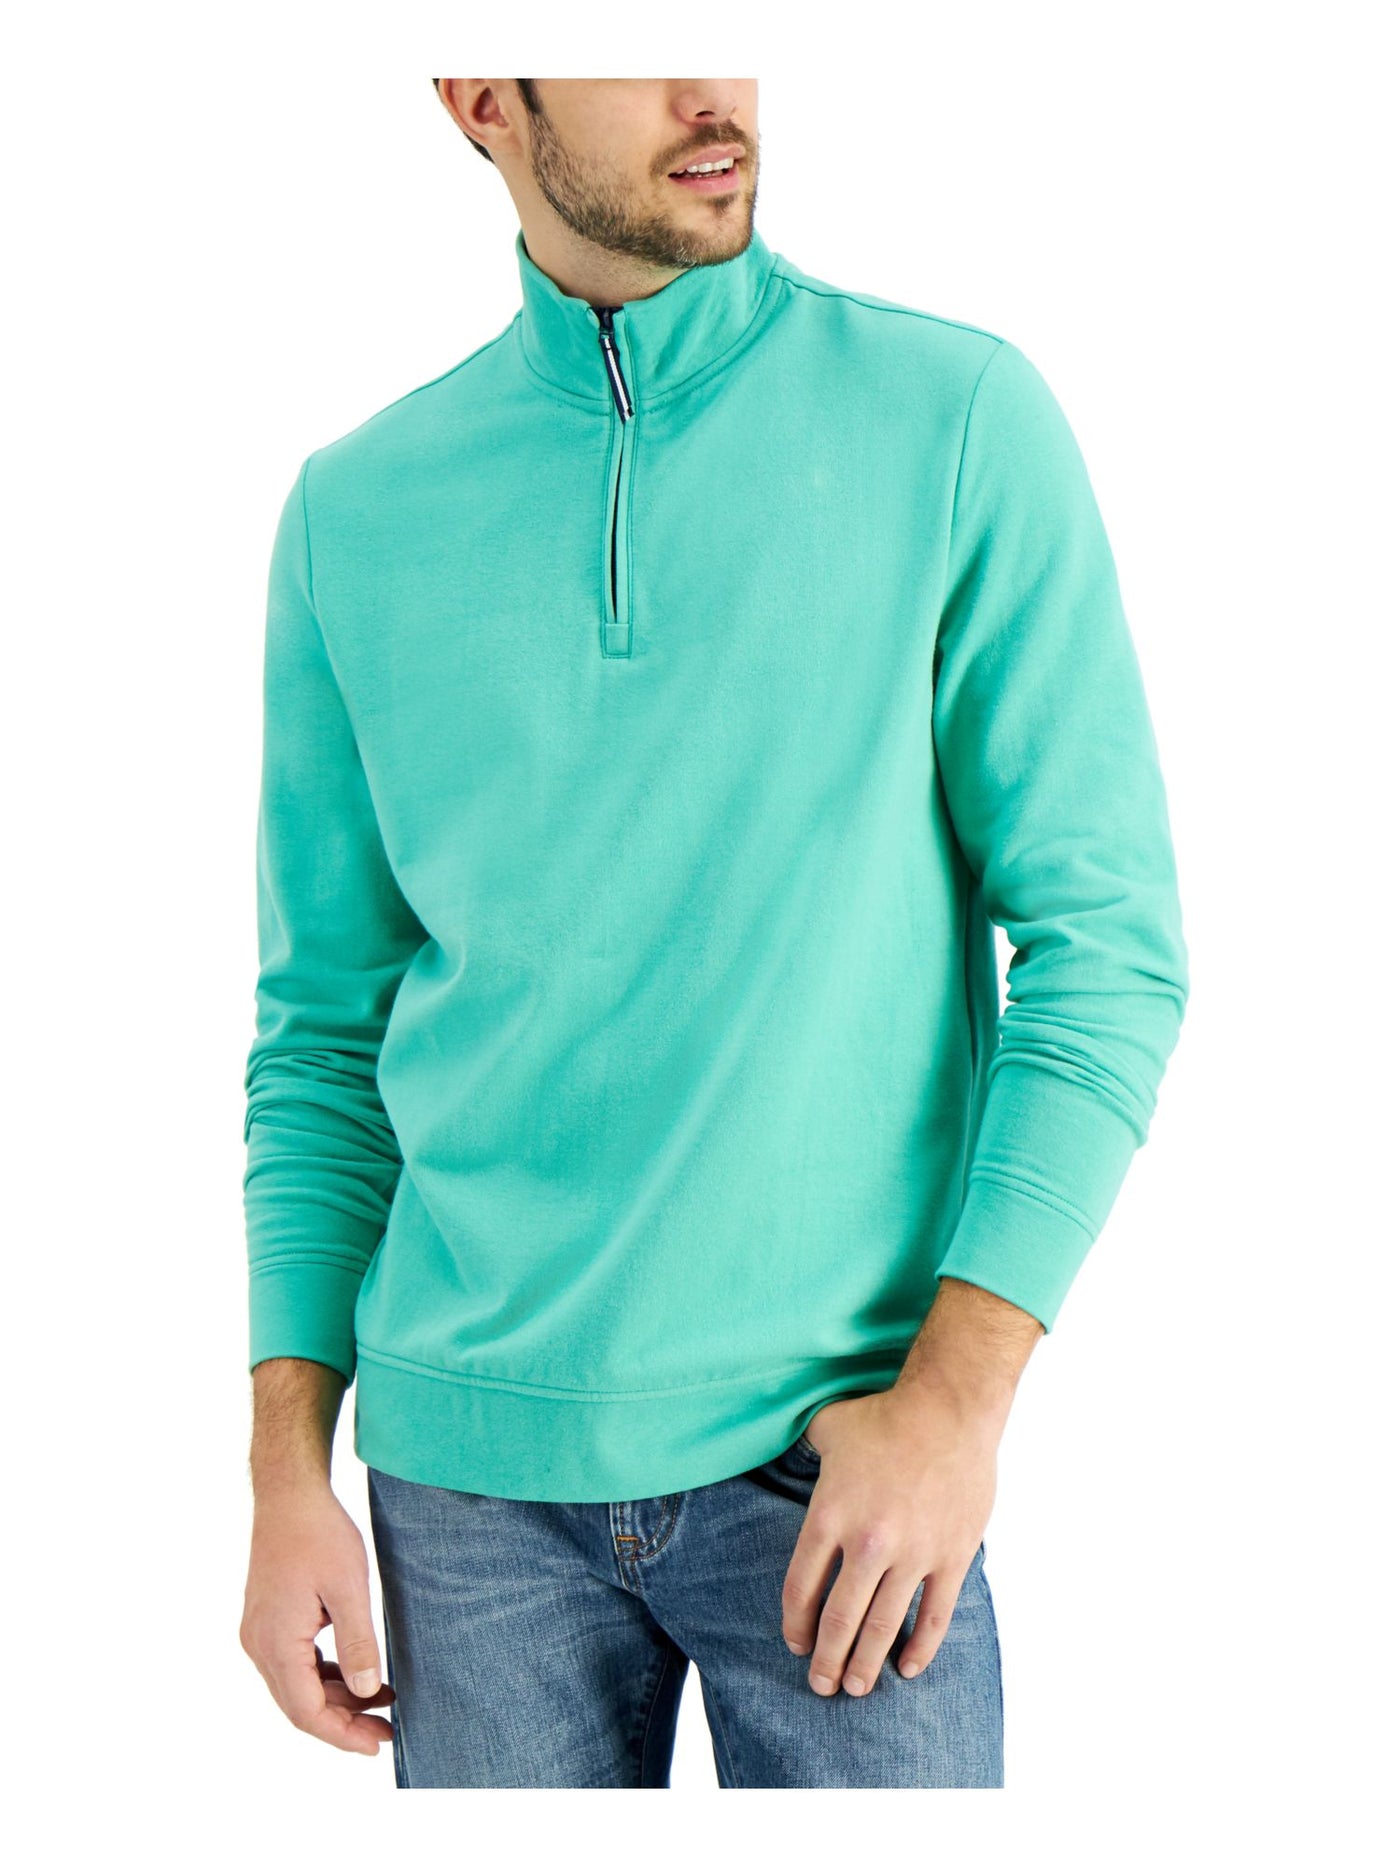 CLUBROOM Mens Light Blue Mock Neck Classic Fit Quarter-Zip Fleece Sweatshirt S